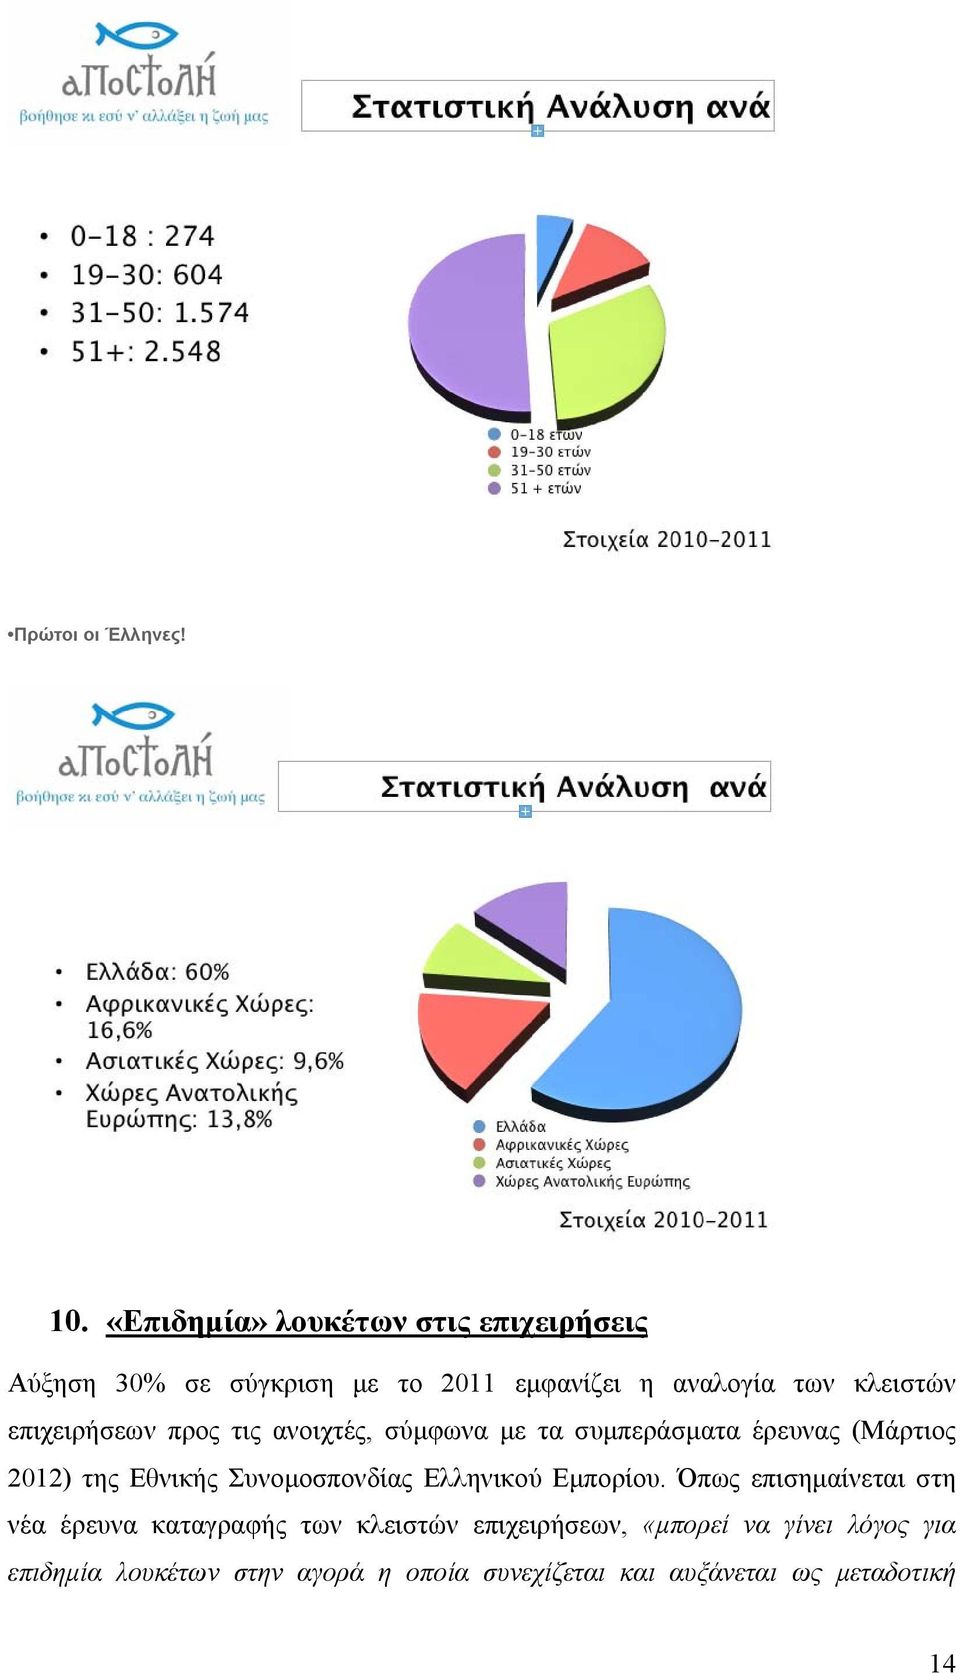 επιχειρήσεων προς τις ανοιχτές, σύμφωνα με τα συμπεράσματα έρευνας (Μάρτιος 2012) της Εθνικής Συνομοσπονδίας